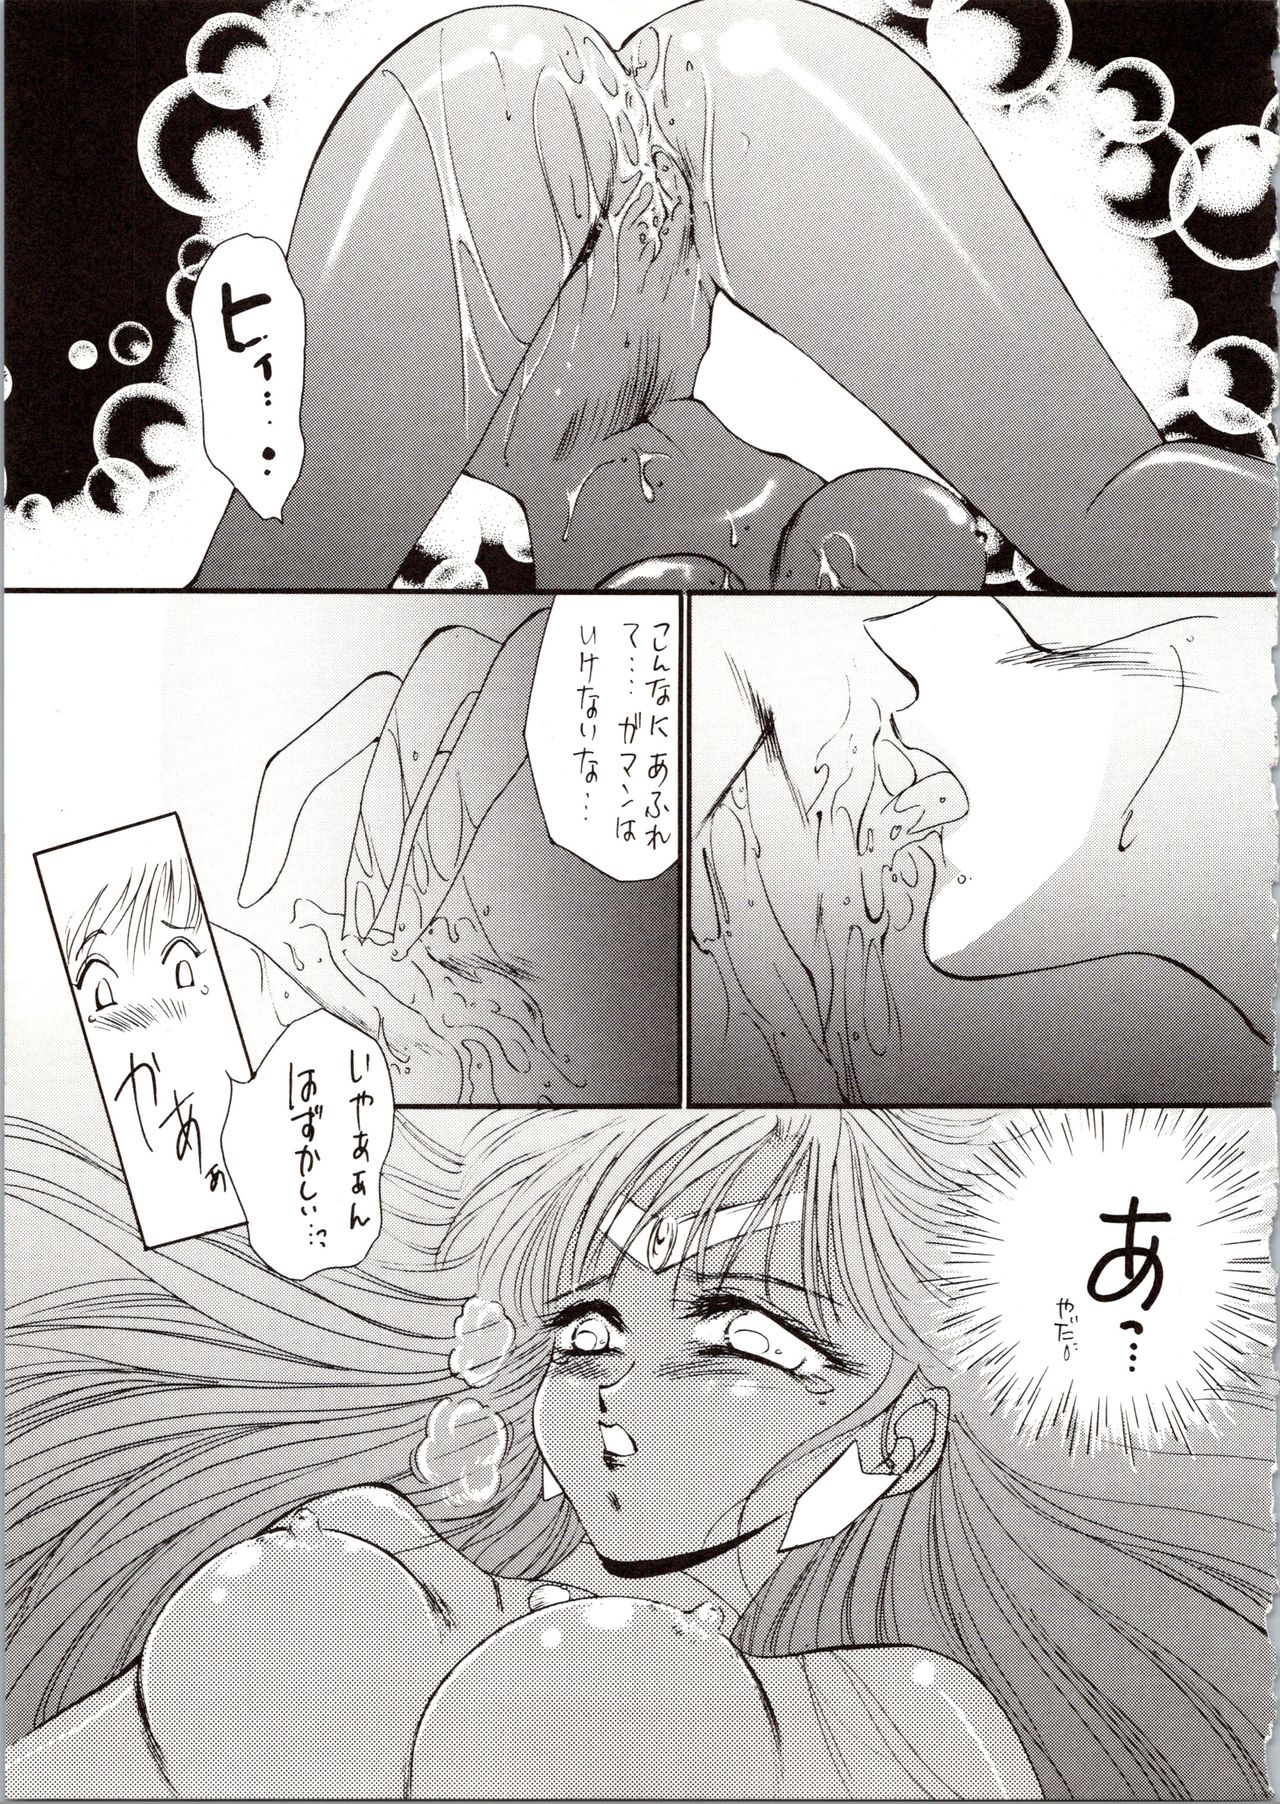 [P.P.P.P.C, TRAP (Matsuzaka Reia, Urano Mami)] Kangethu Hien Vol. 6 (Bishoujo Senshi Sailor Moon) page 17 full